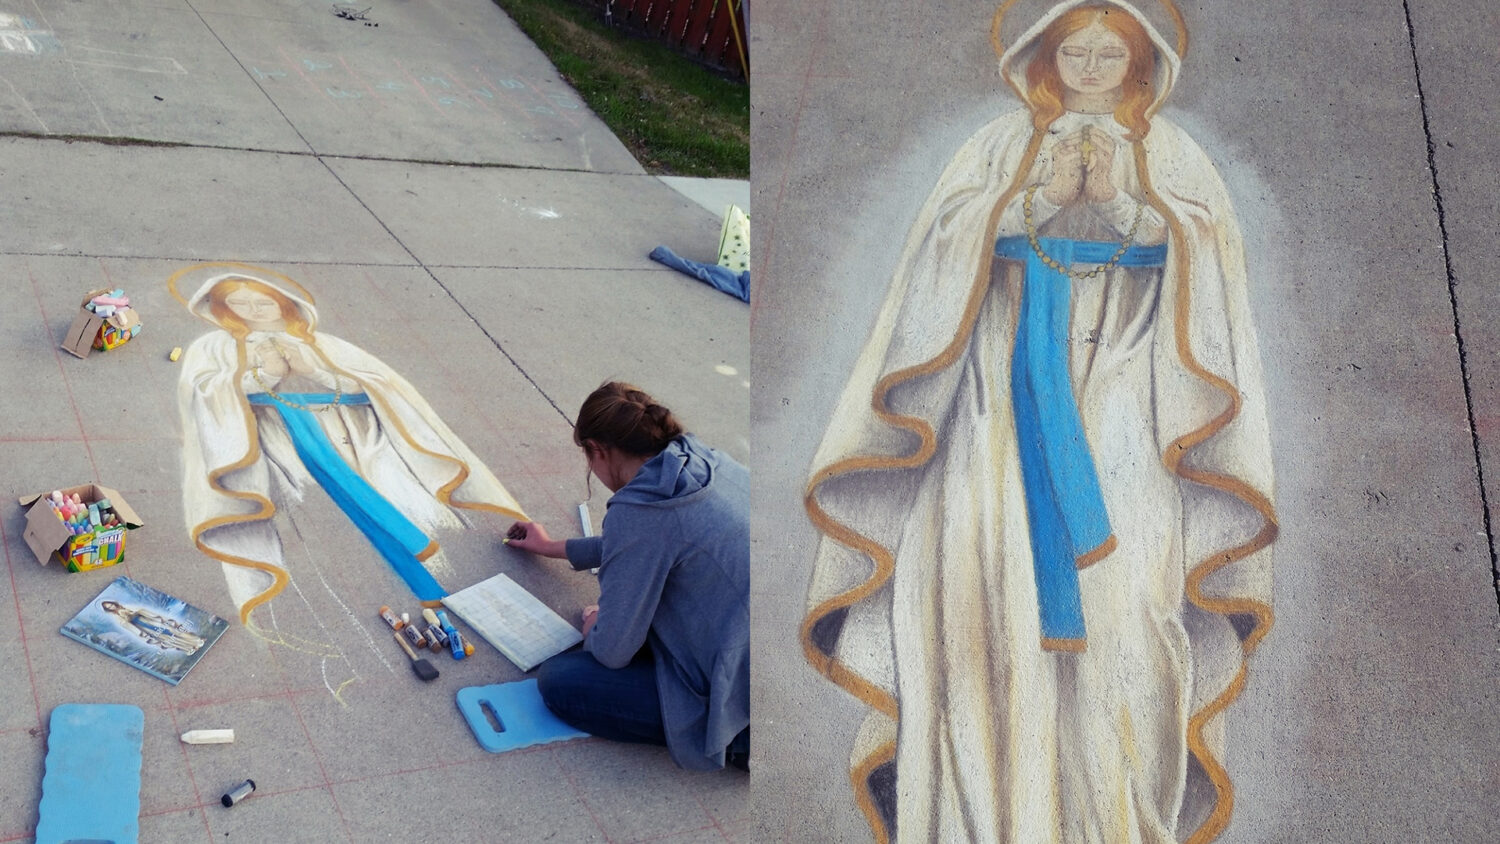 Evanjelizácia kriedou – obraz Panny Márie zdobí chodník